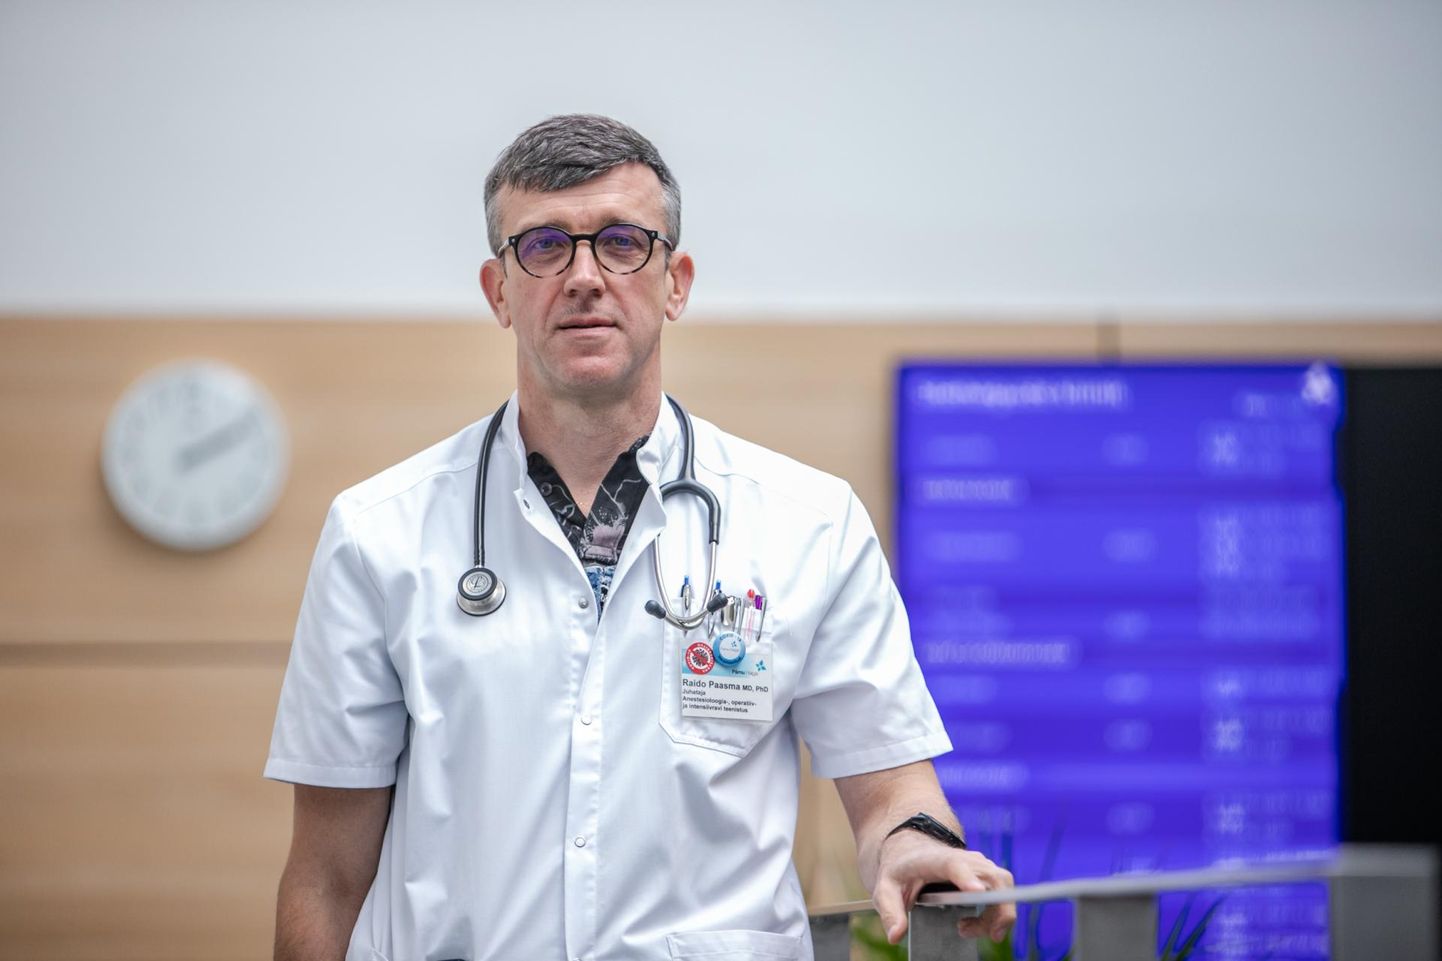 Pärnu haiglast pealinna suunduv doktor Raido Paasma märkis, et hinnangu peaksid temale kui arstile andma kolleegid, kellega ta on koos töötanud, ja patsiendid.